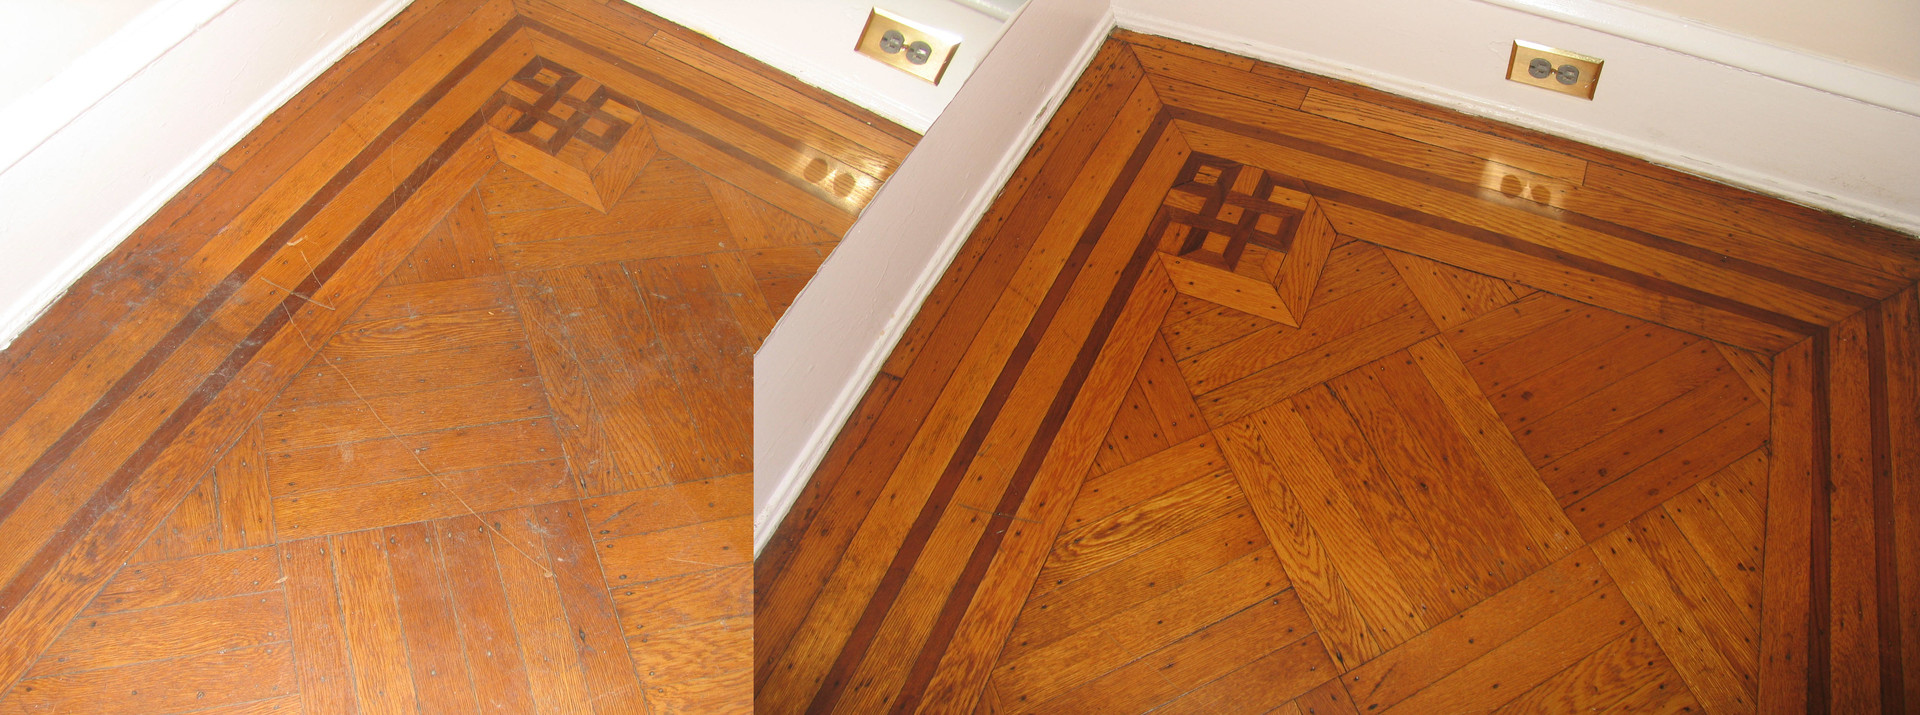 Hardwood Floor Refinishing Wilmington Nc Of New Life Floors with Sandless Wood Floor Refinishing